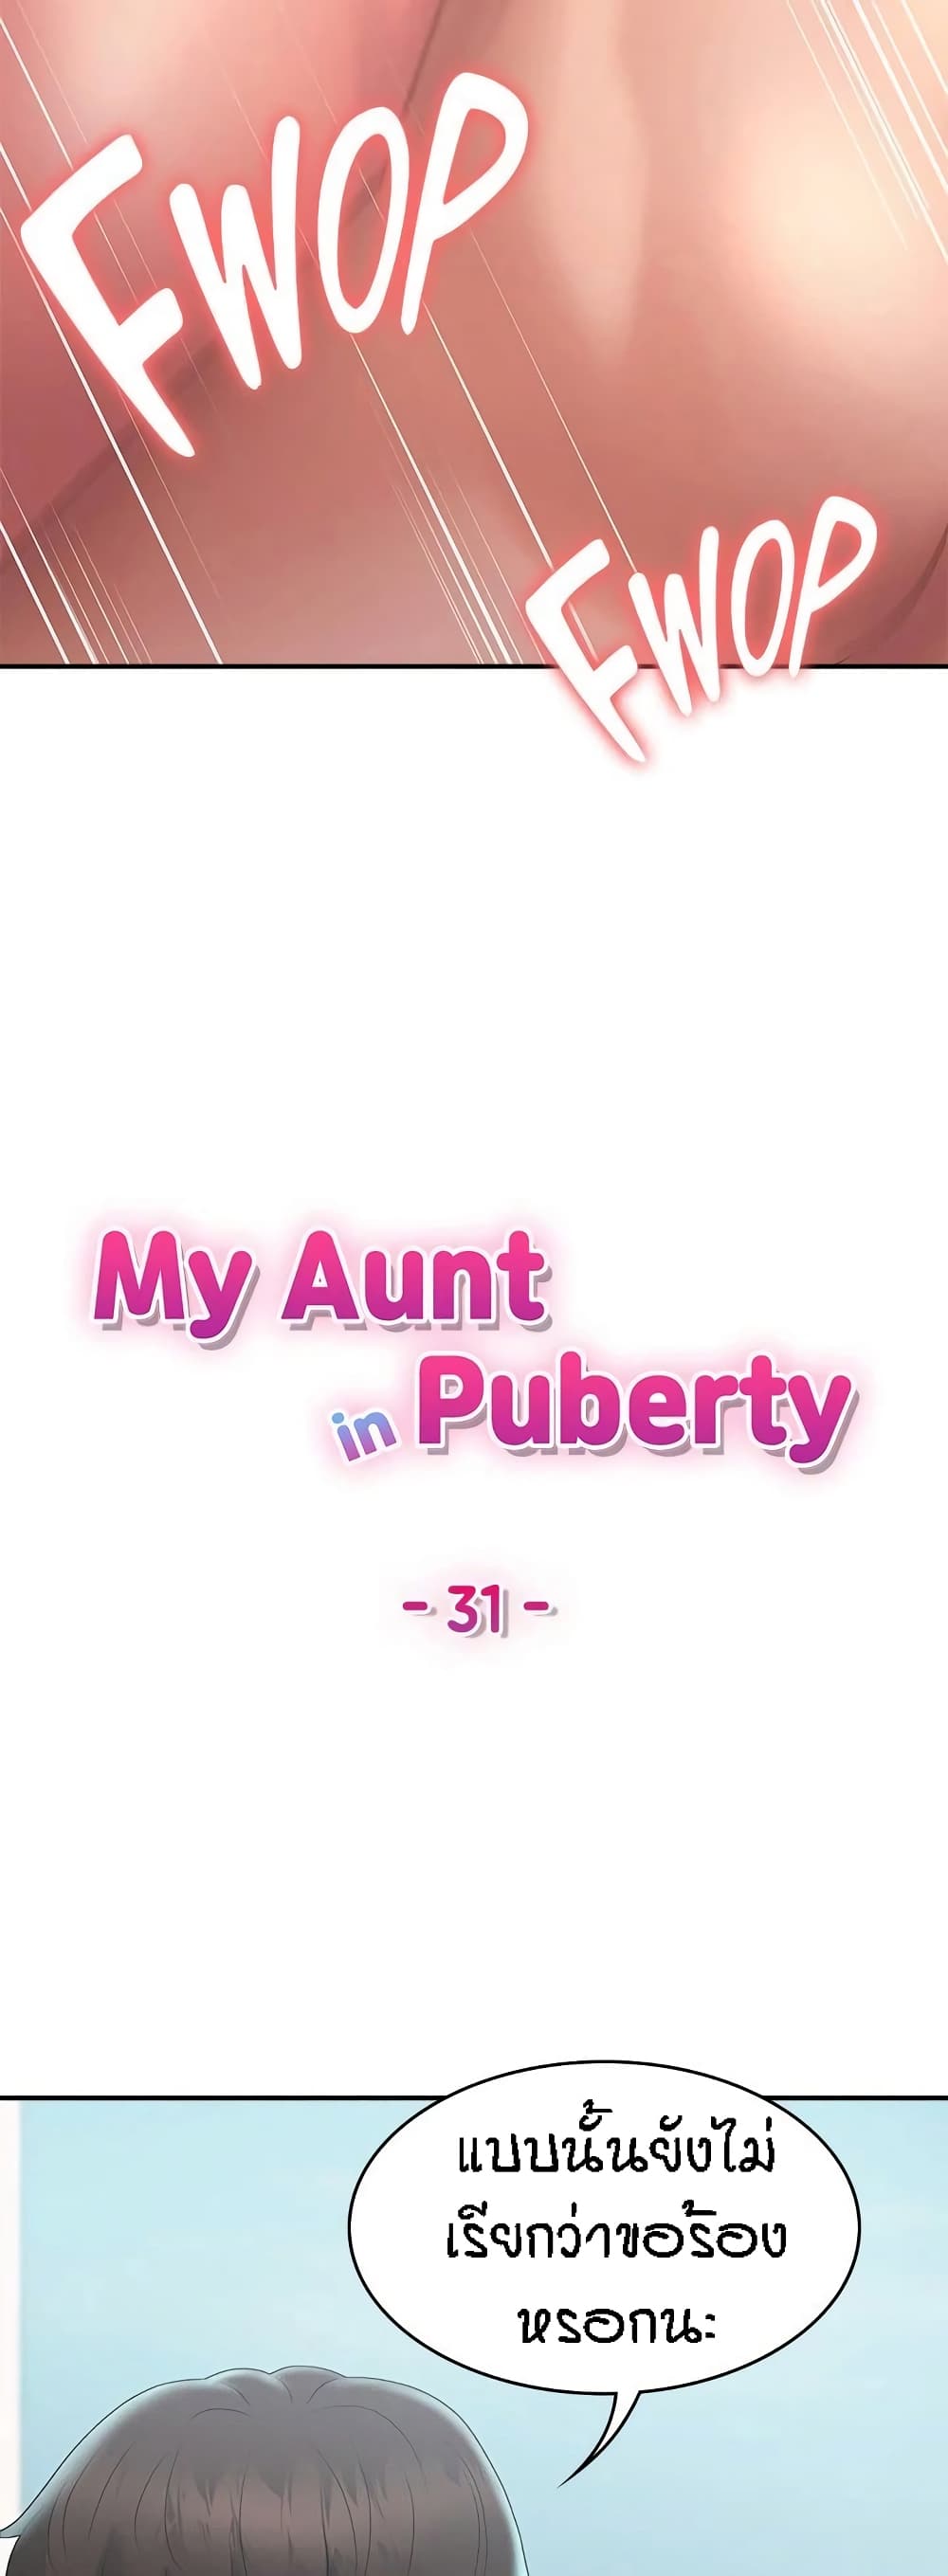 Aunt Puberty 31 (10)